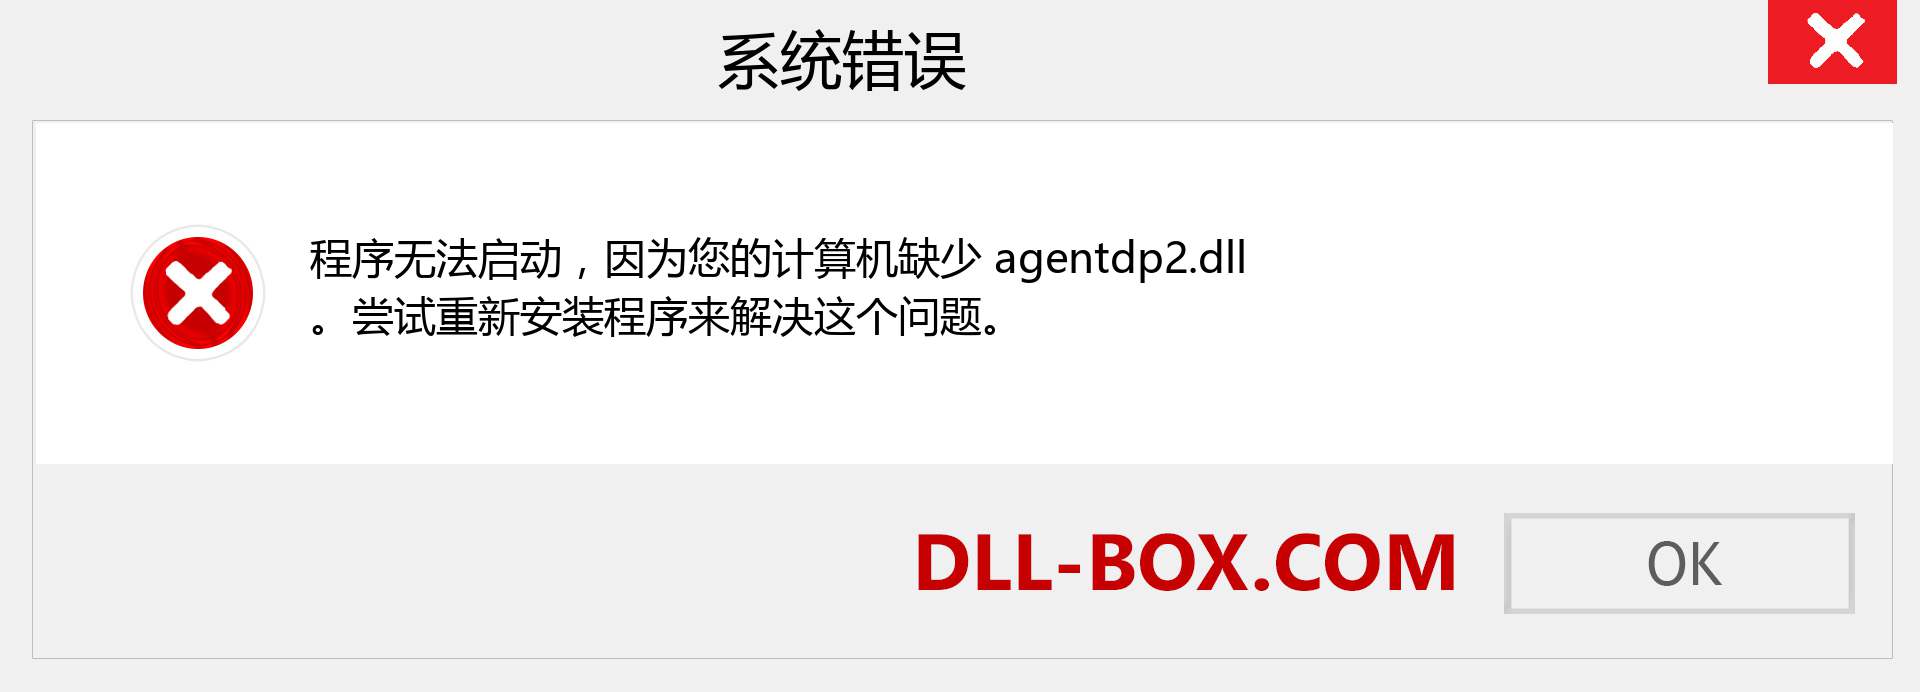 agentdp2.dll 文件丢失？。 适用于 Windows 7、8、10 的下载 - 修复 Windows、照片、图像上的 agentdp2 dll 丢失错误